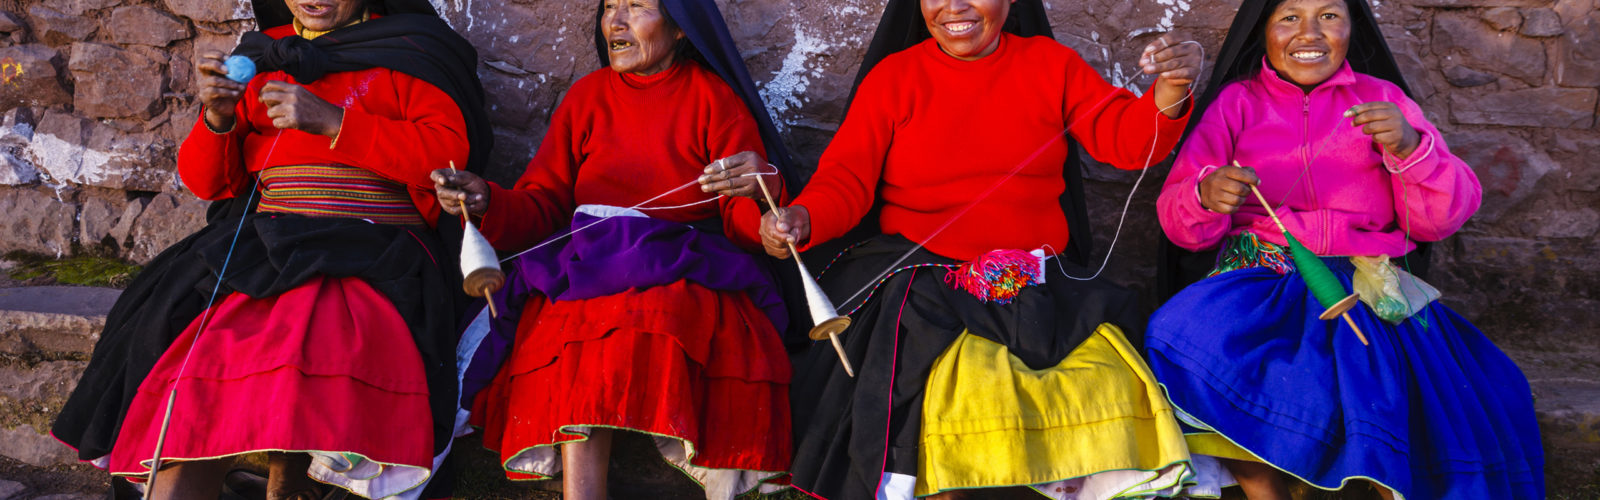 women-spinning-wool-lake-titicaca